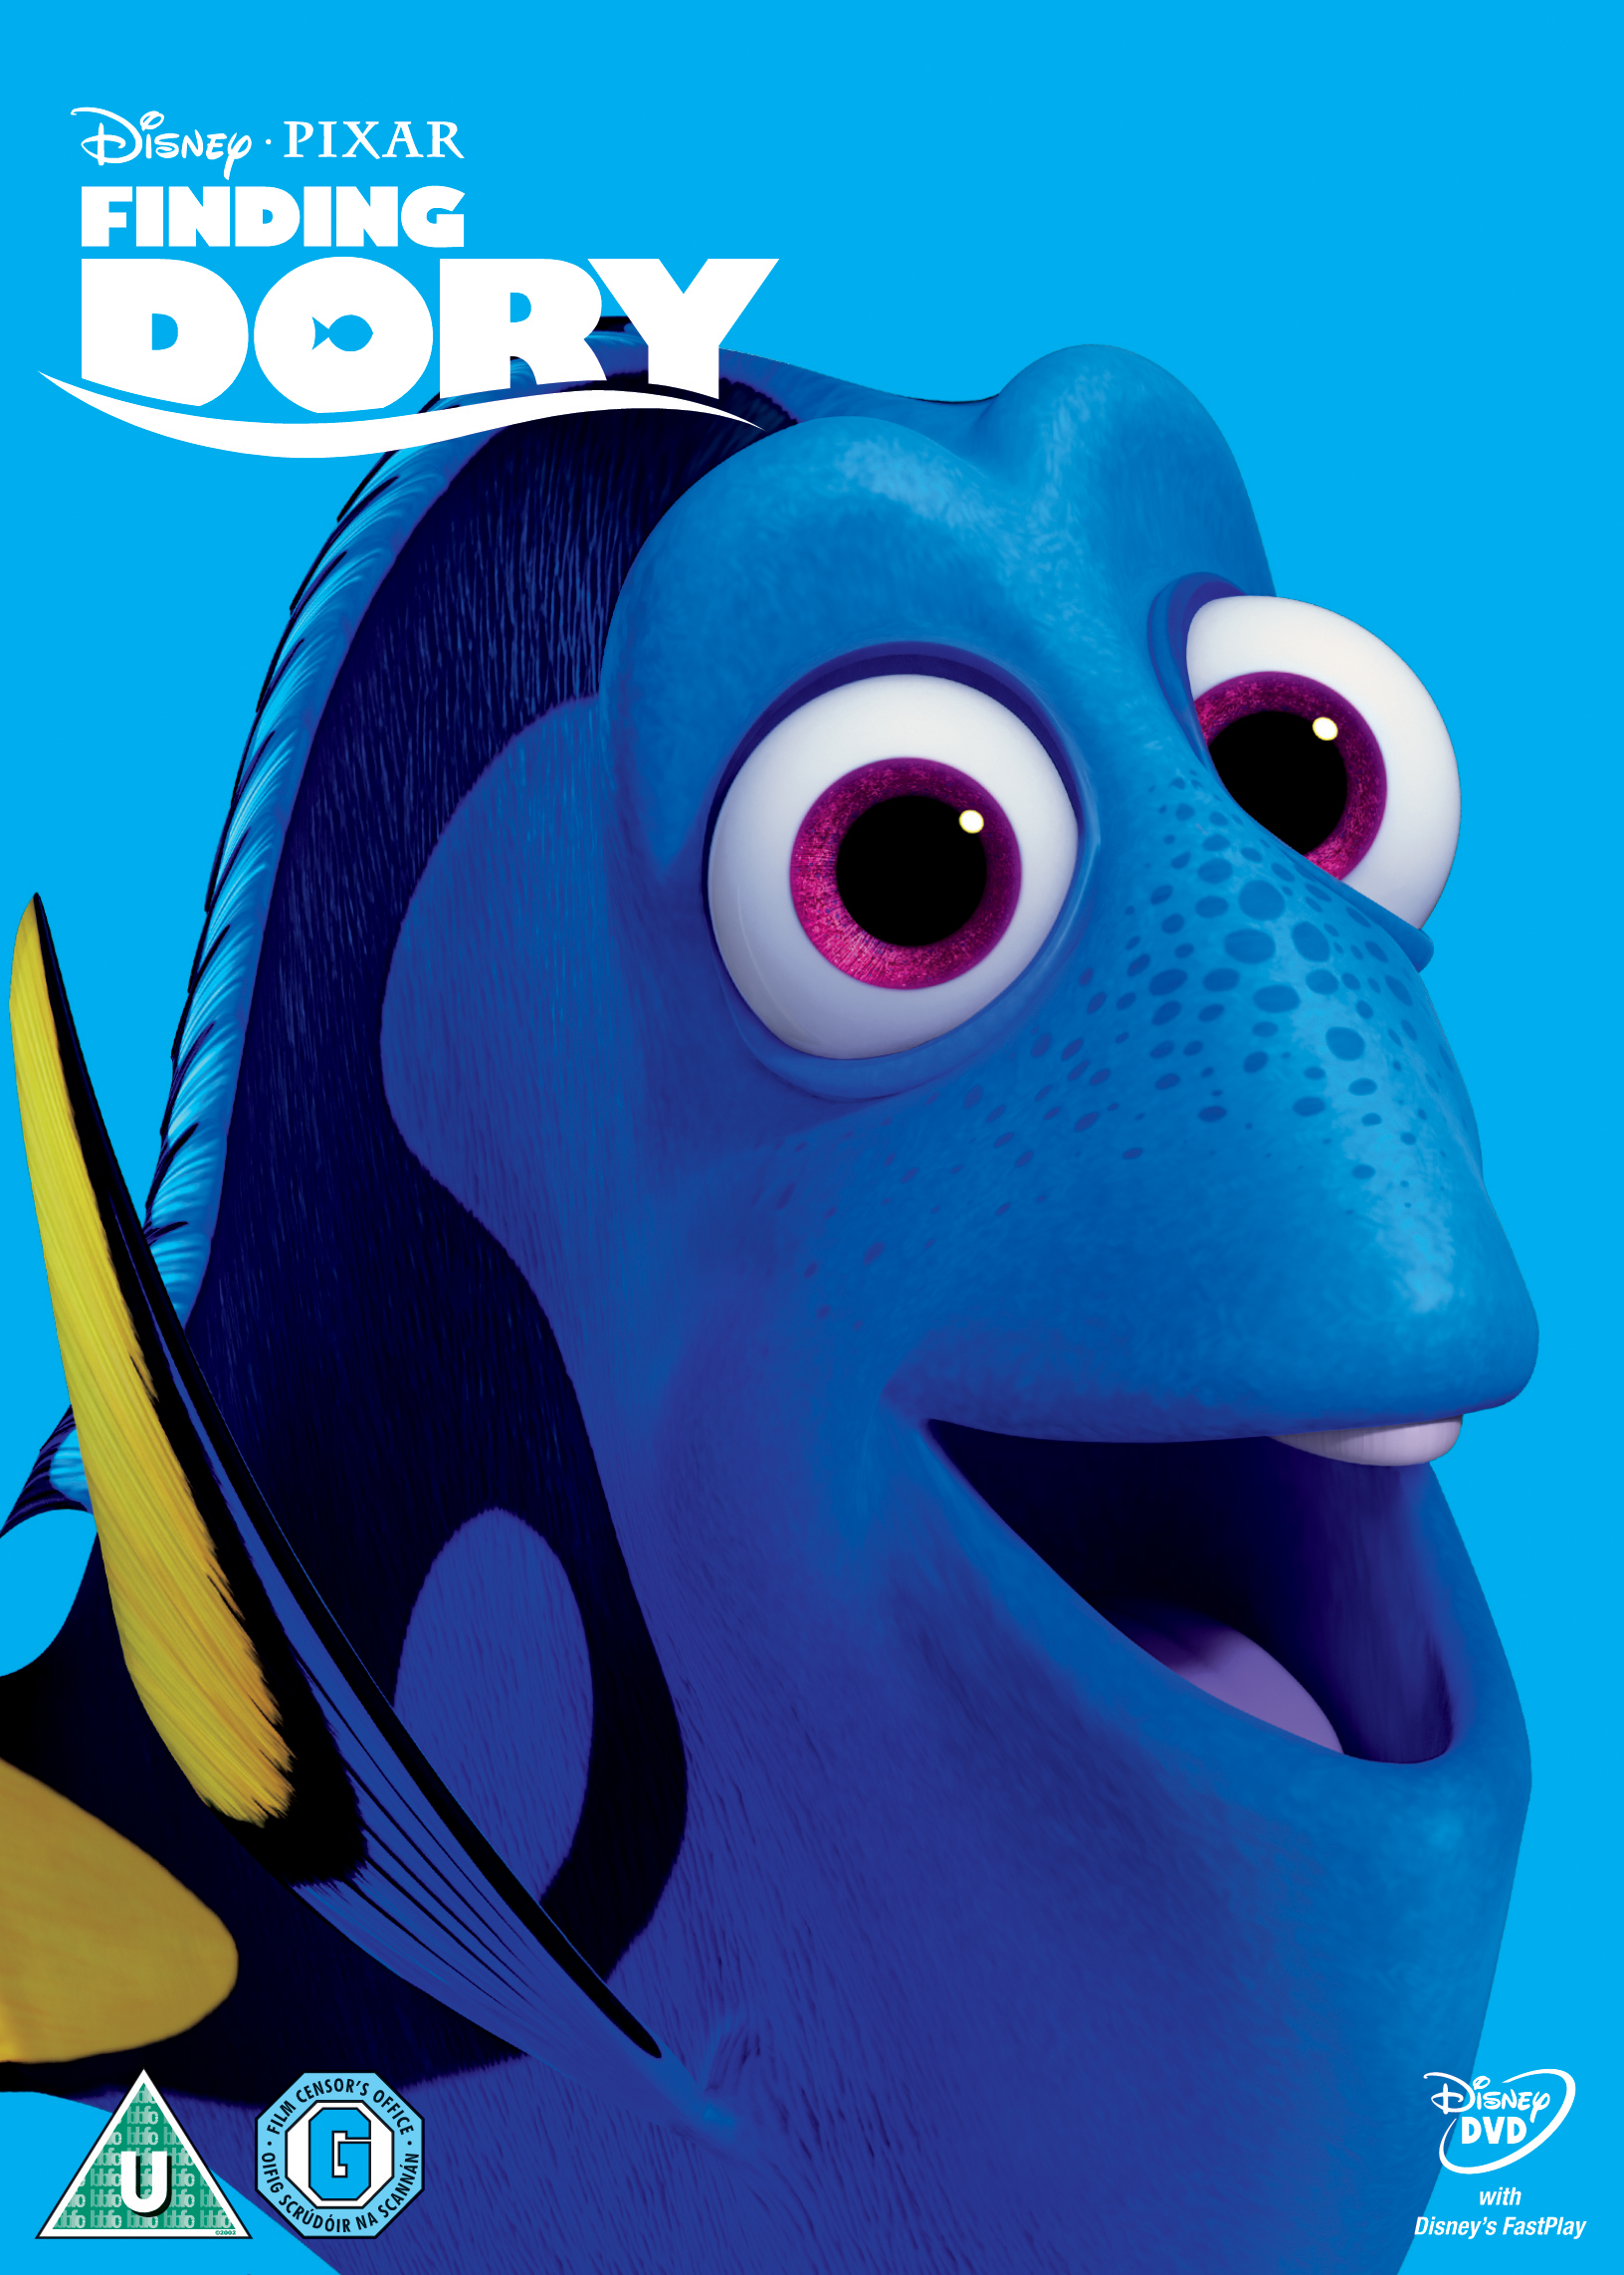 Buy Finding Dory on DVD | HMV Store